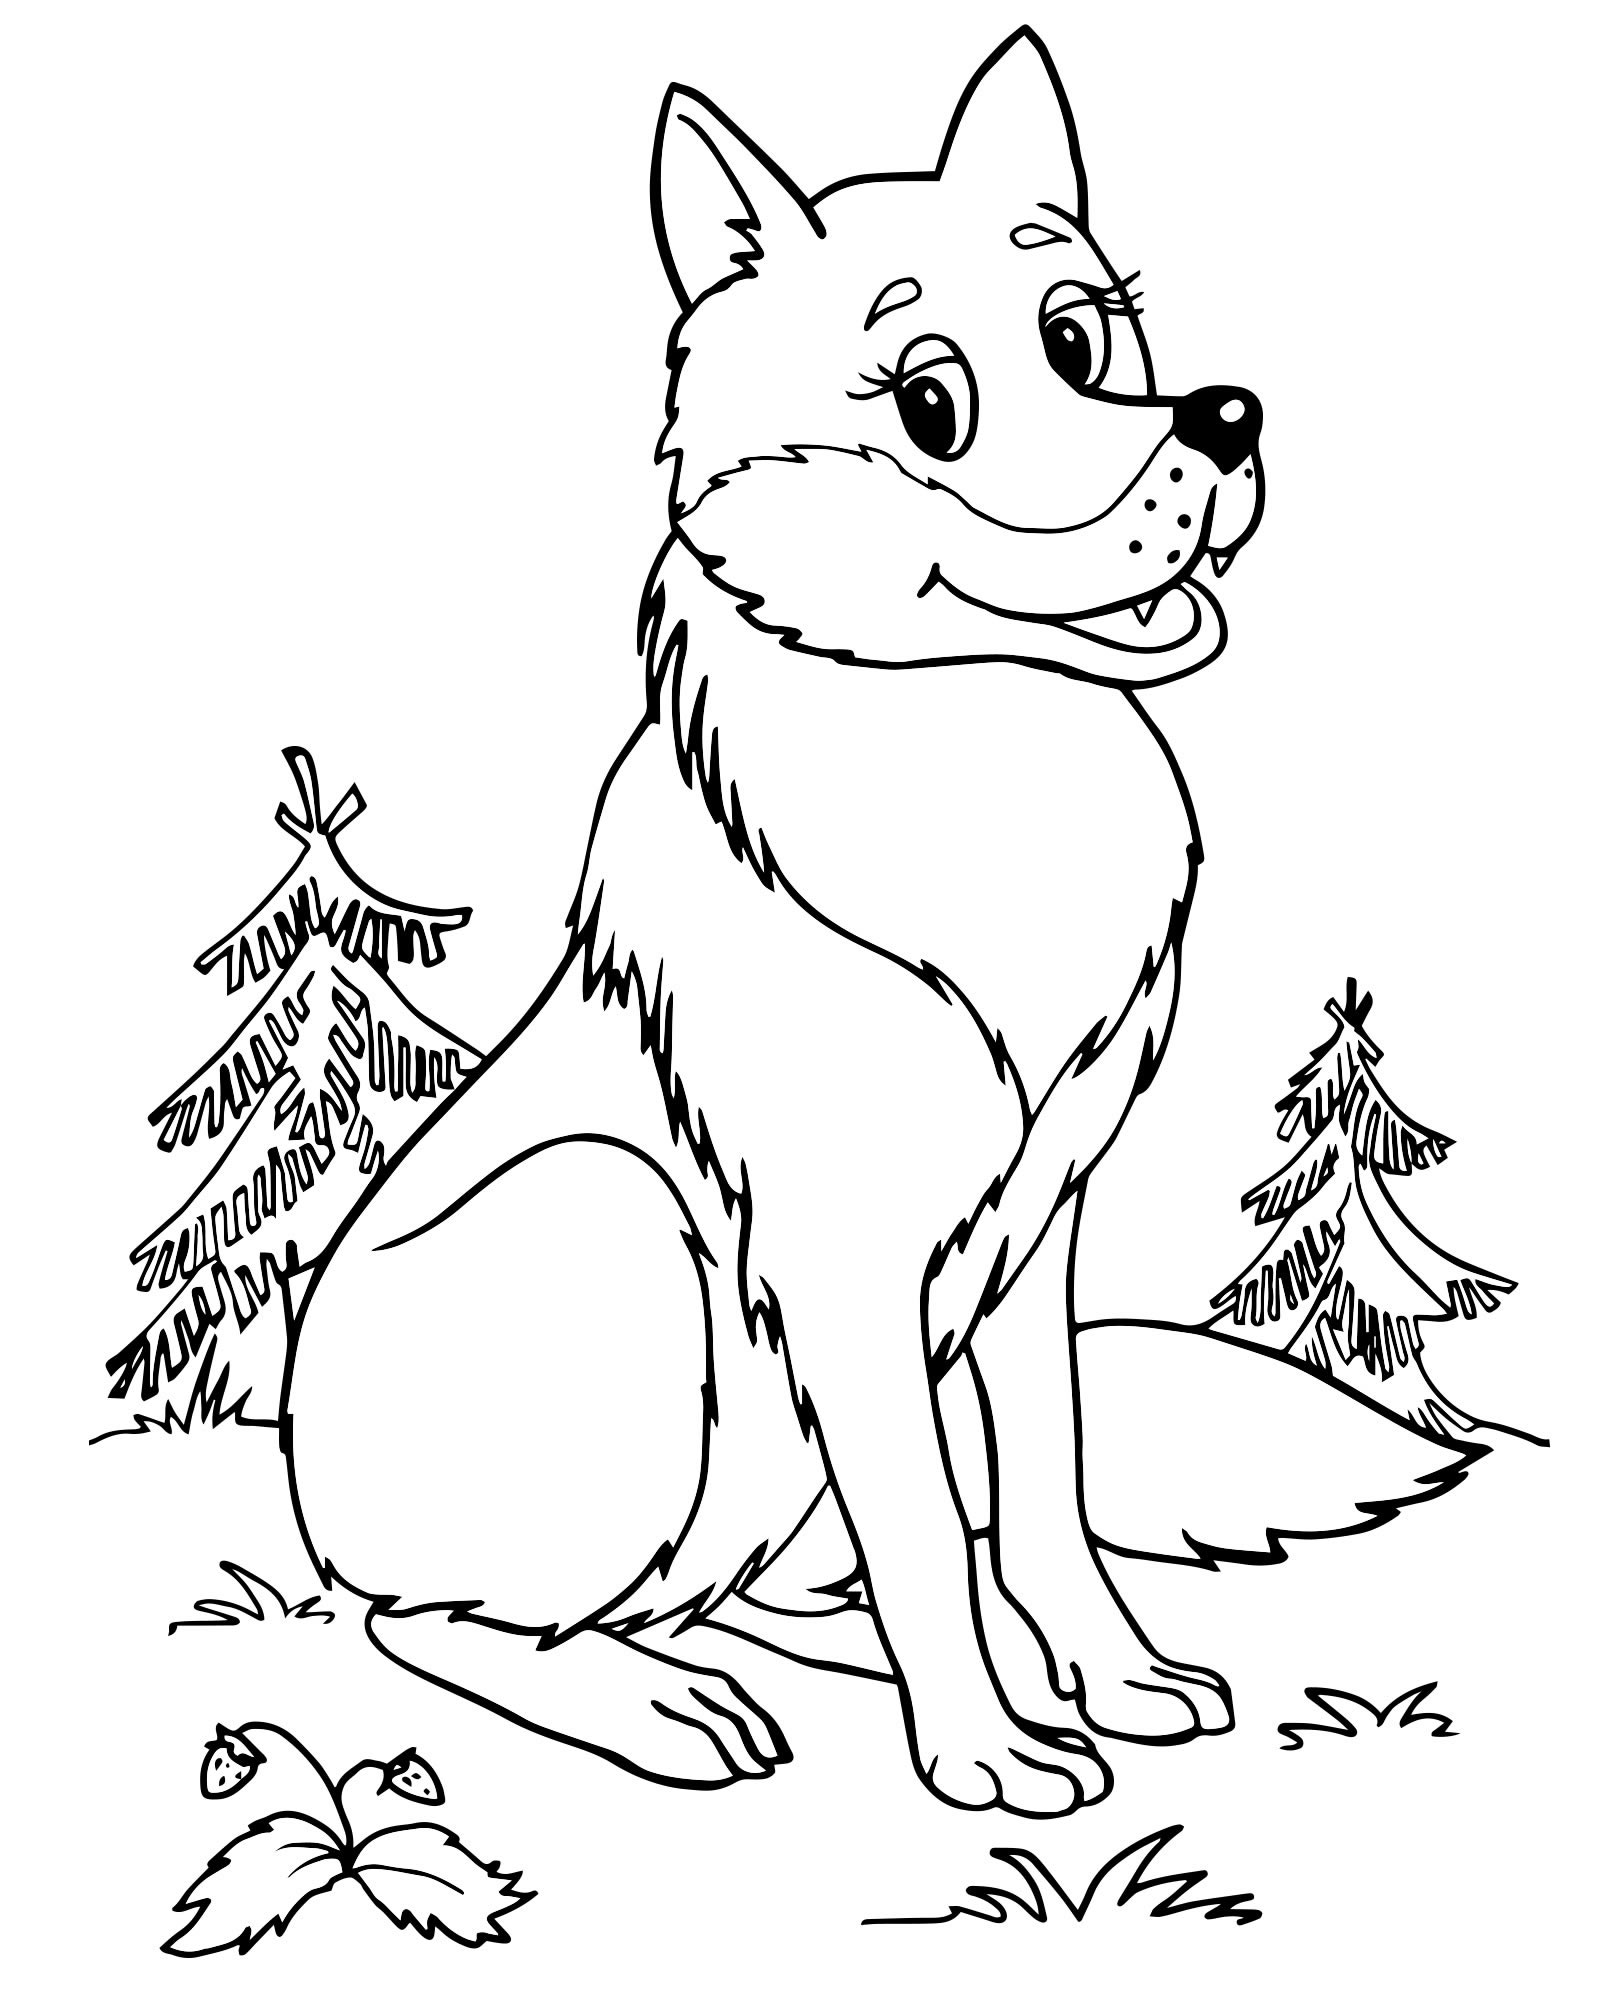 Волк в лесу раскраска для детей